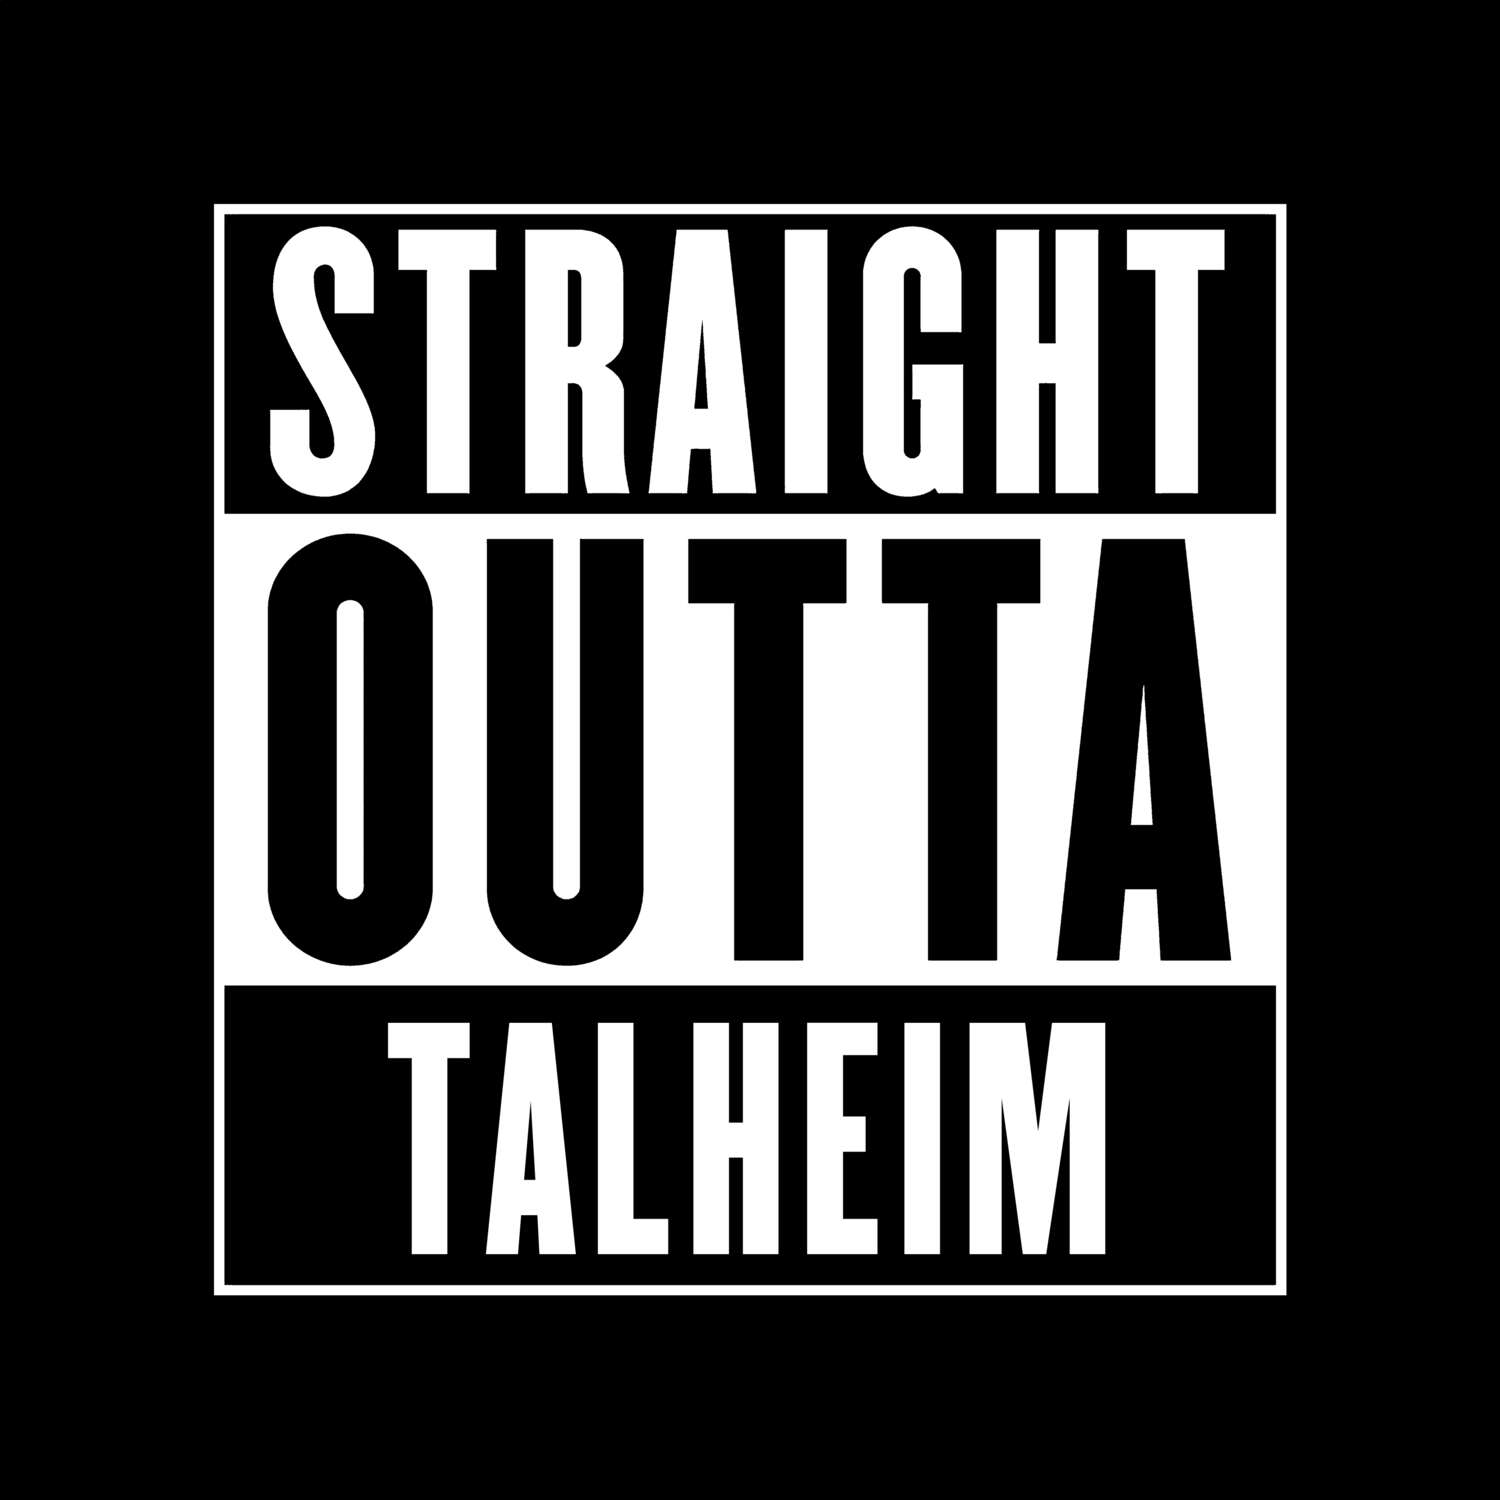 Talheim T-Shirt »Straight Outta«